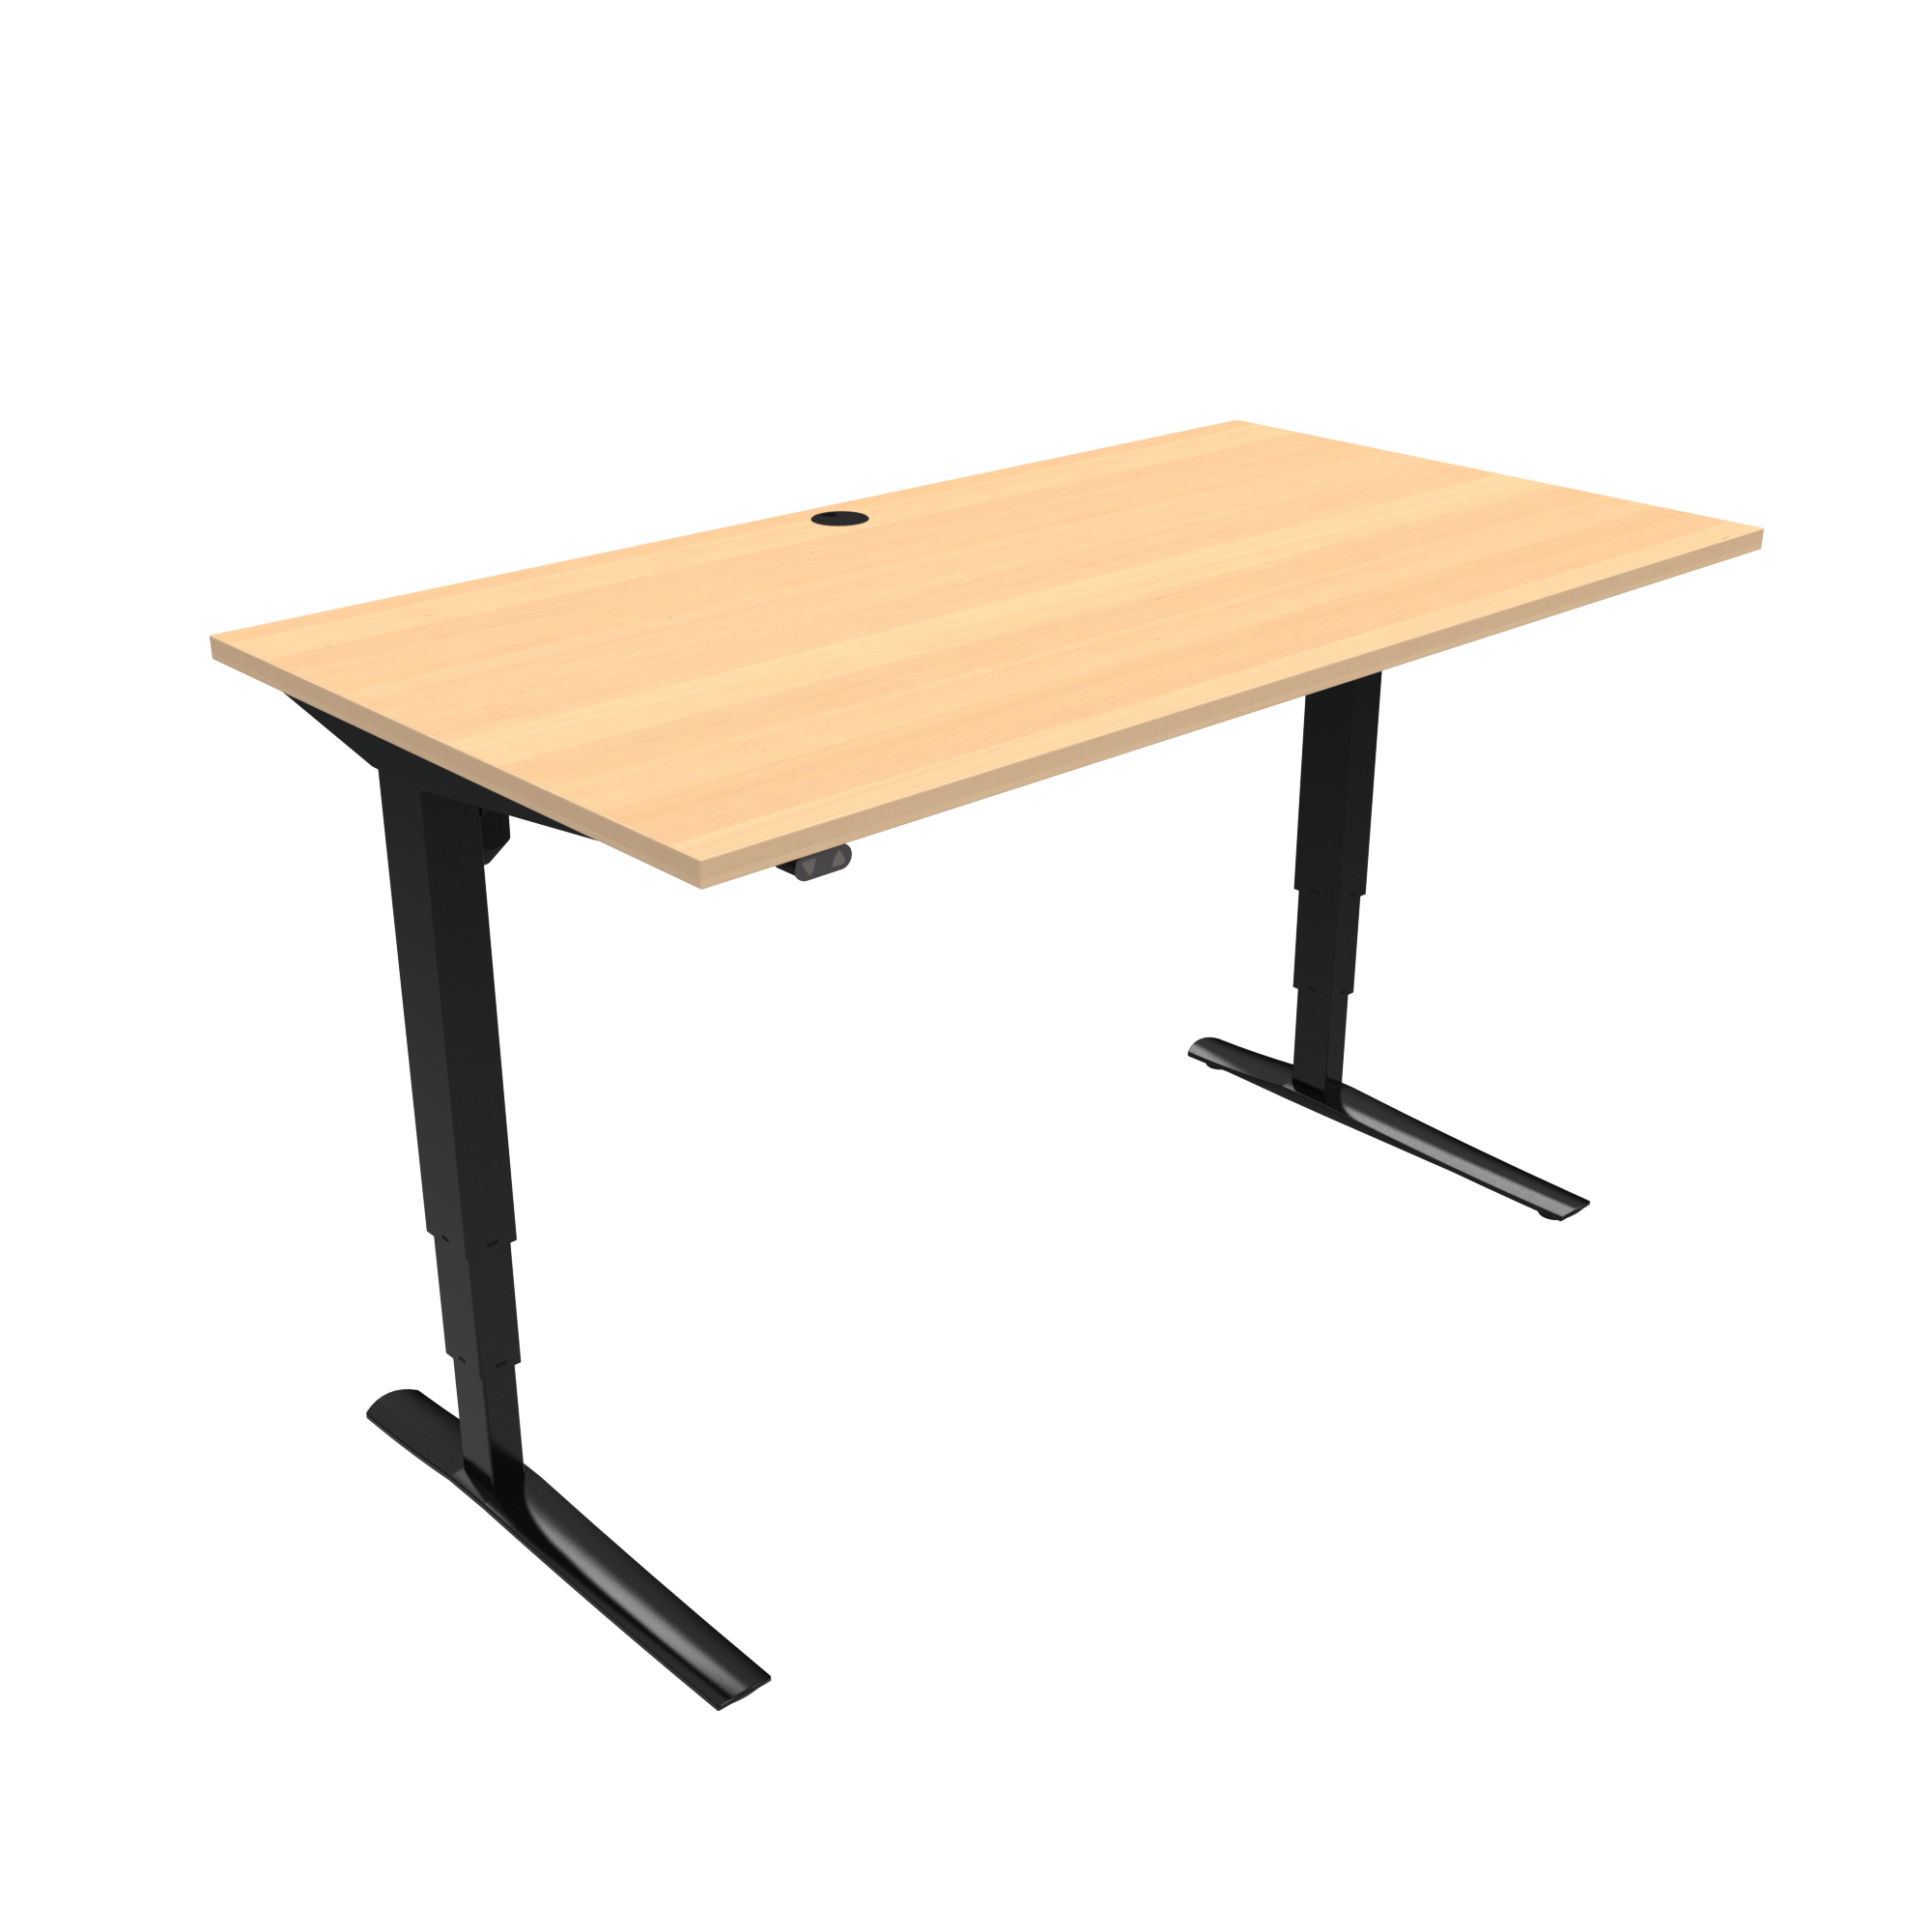 ConSet 501-43 EHA desk 1200w 800d black frame beech top